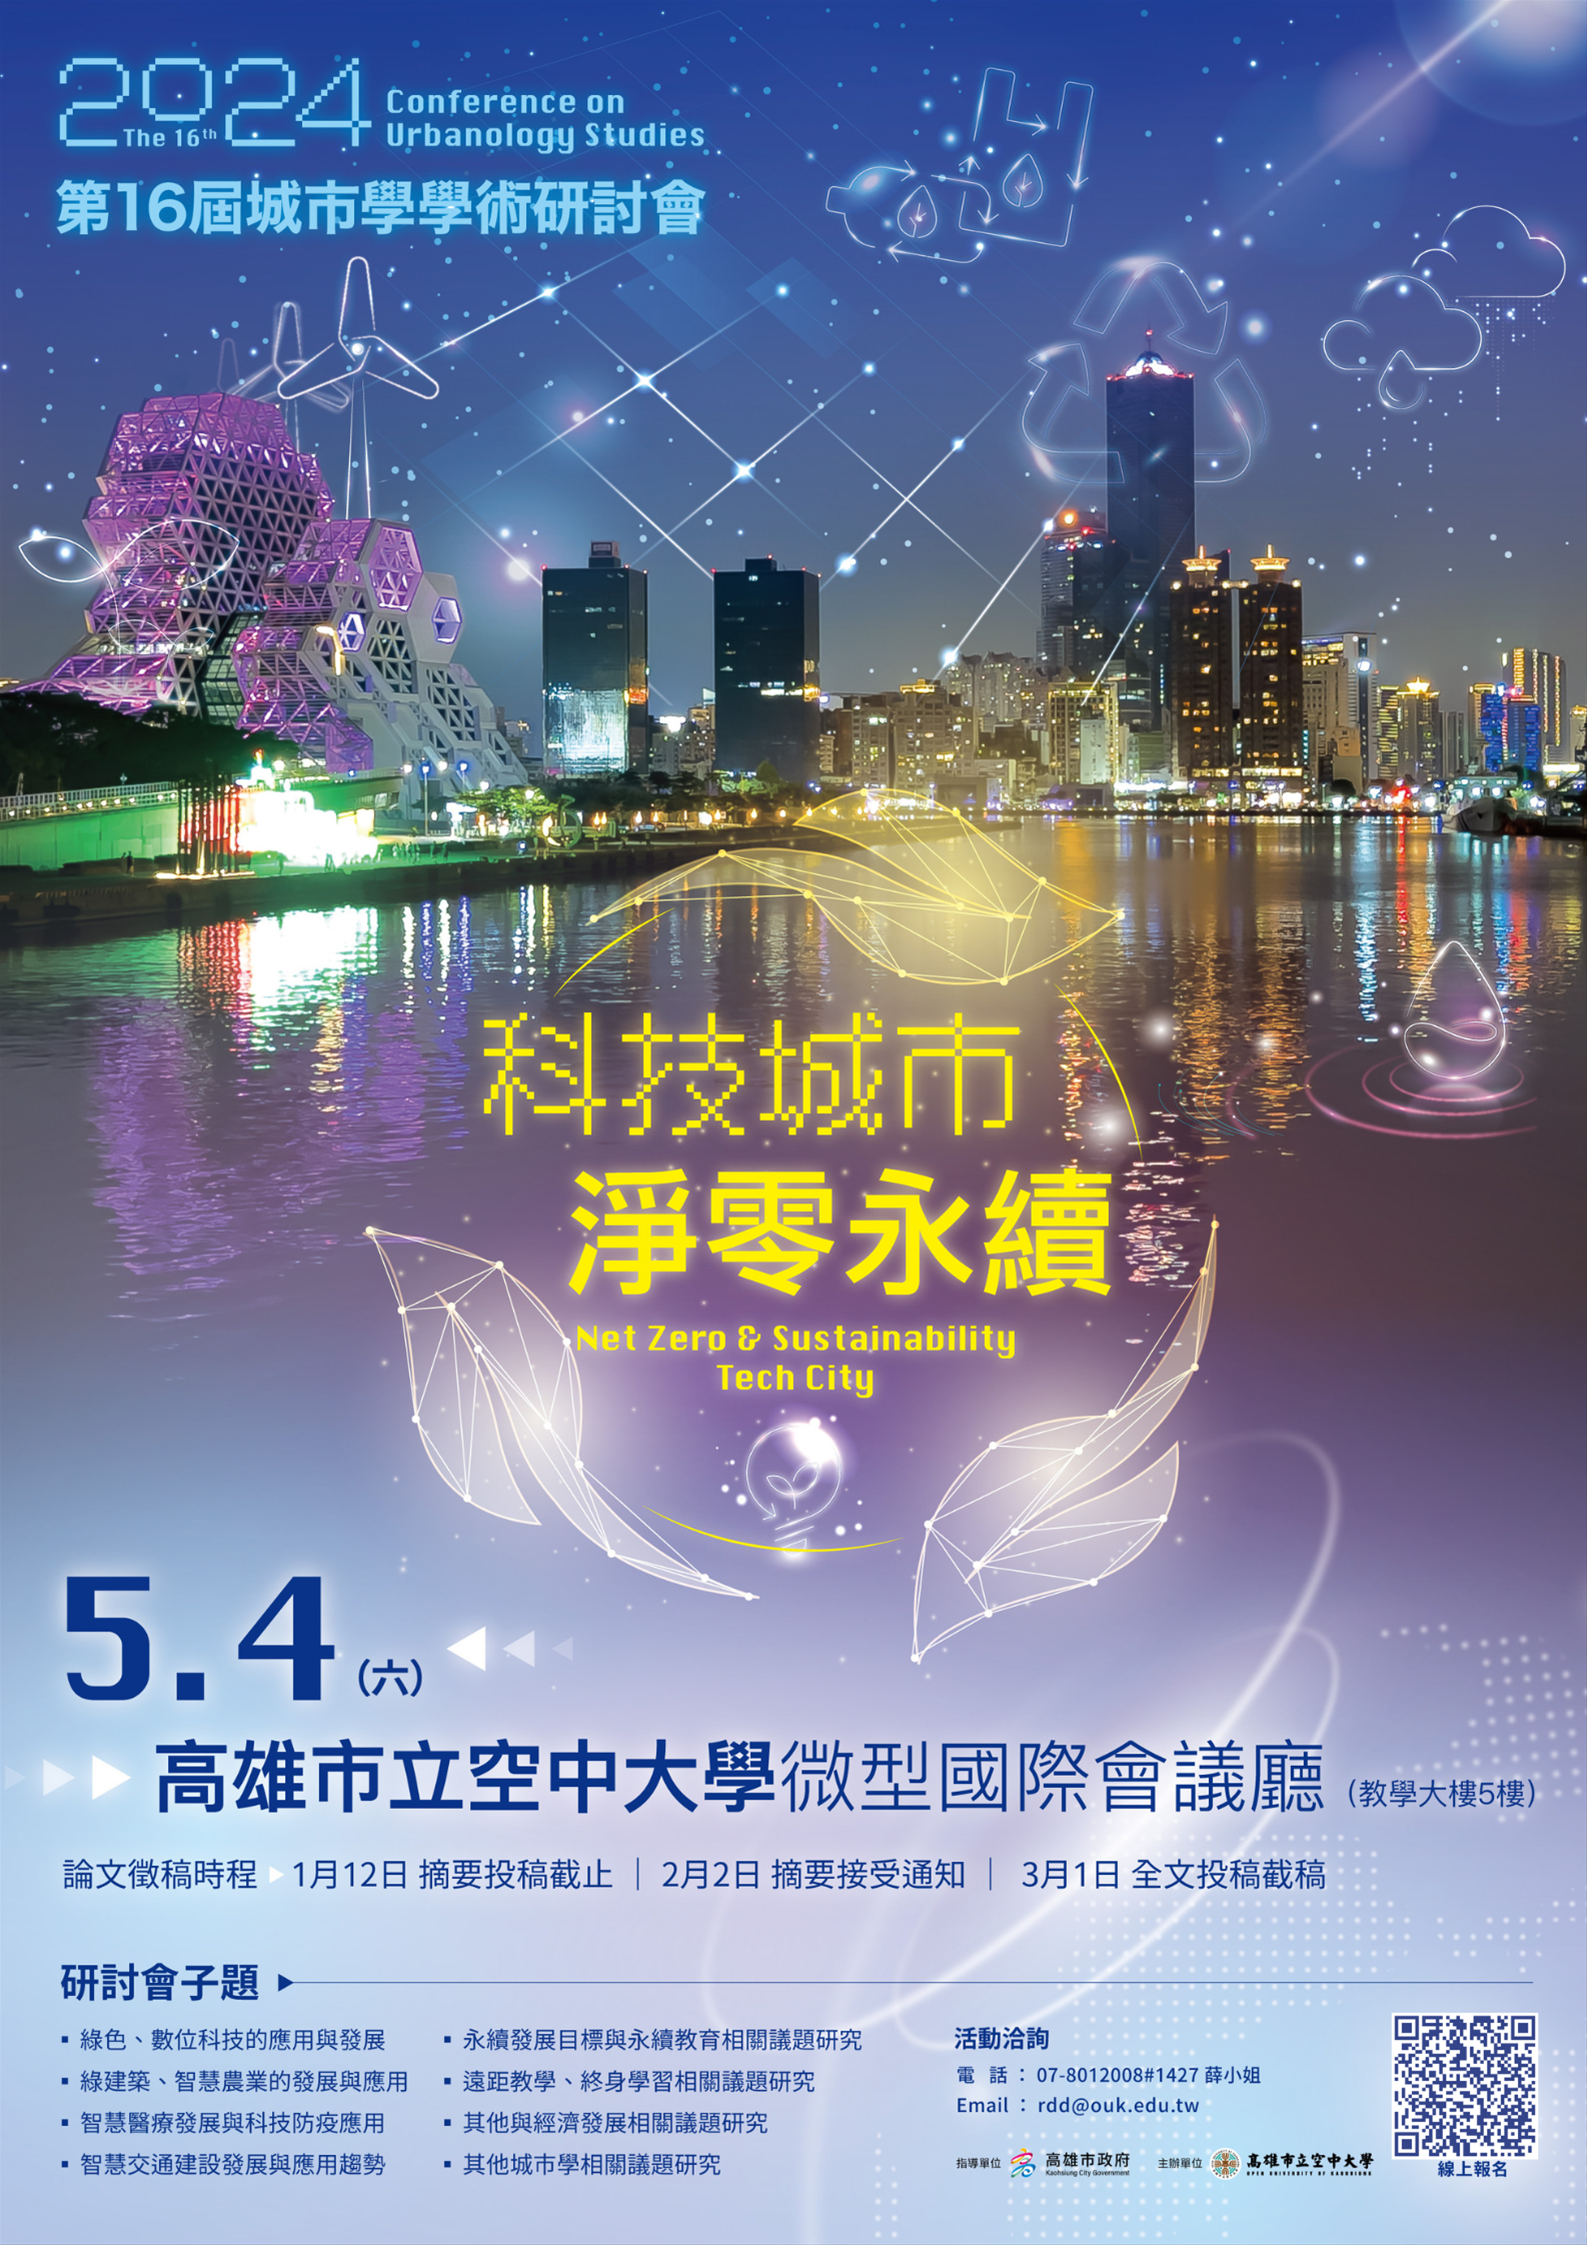 【轉知】第16屆城市學學術研討會-「科技城市 淨零永續」訂於5月4日(六)舉行。